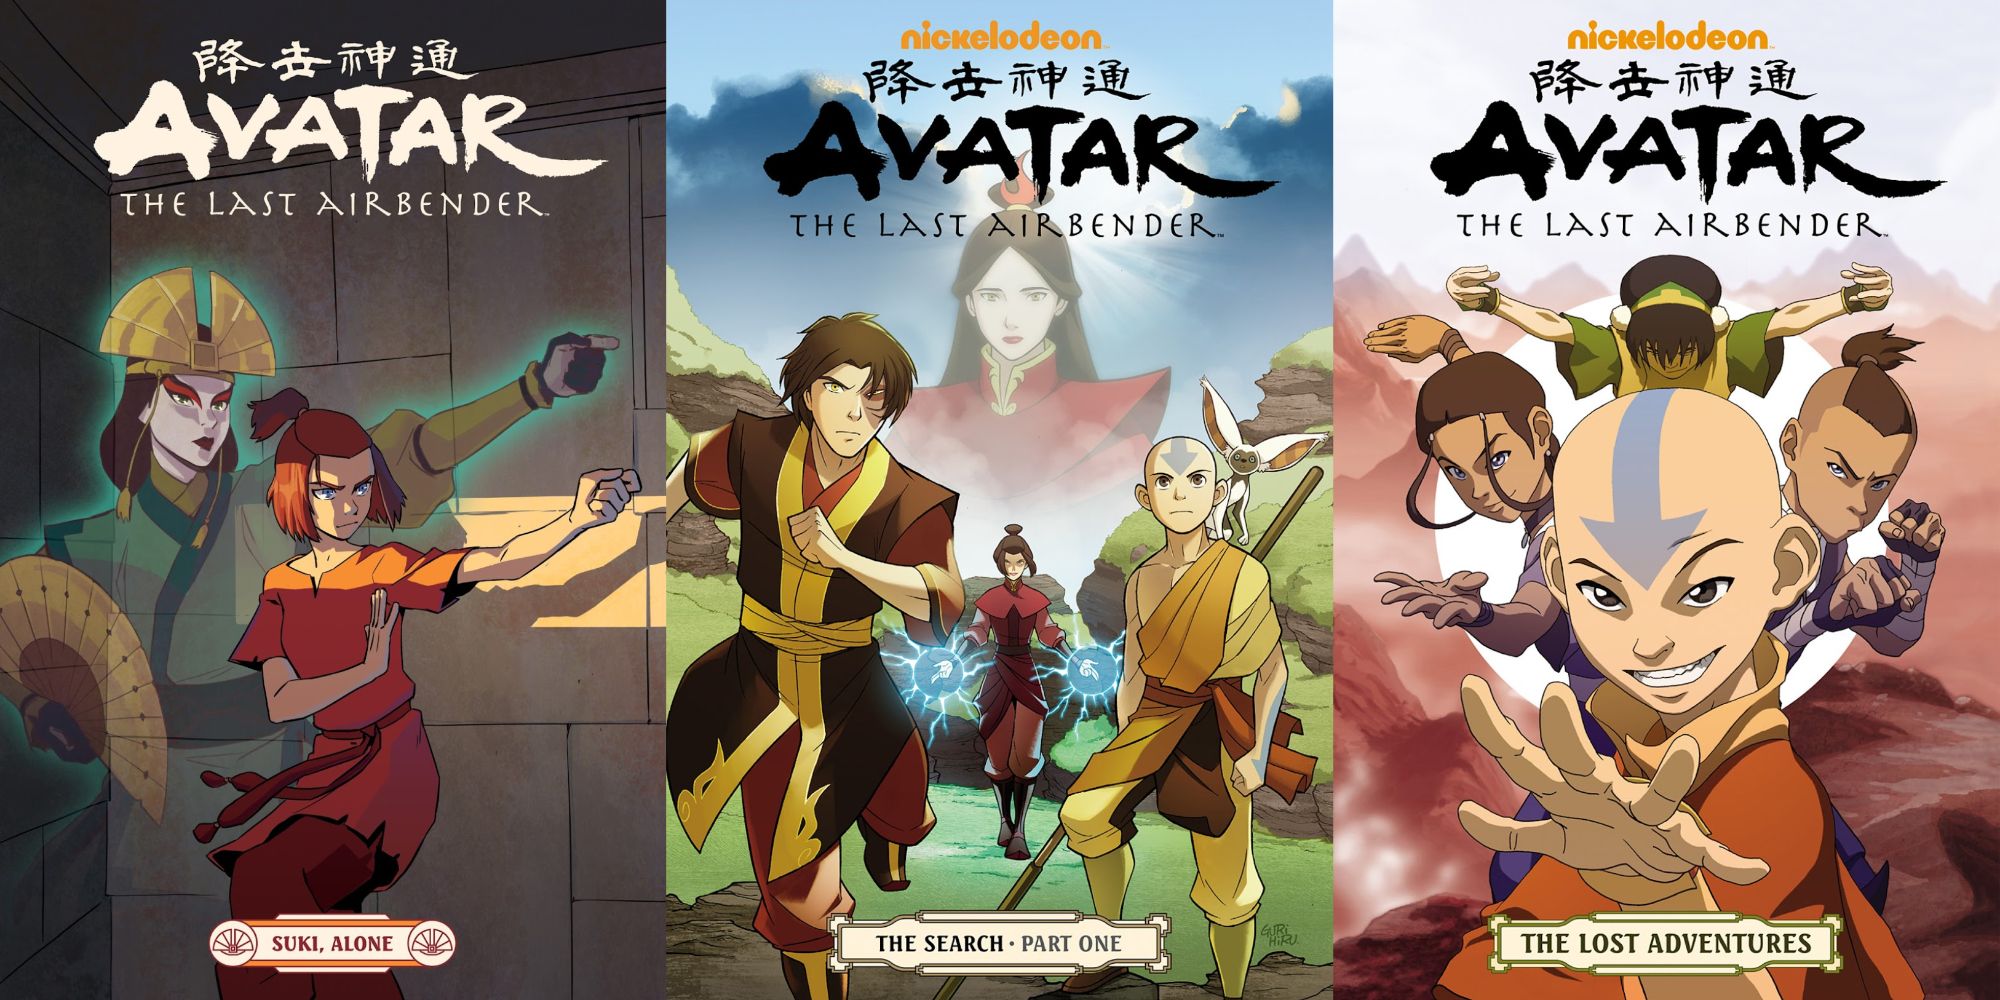 Clasificación de los 10 mejores cómics de Avatar The Last Airbender